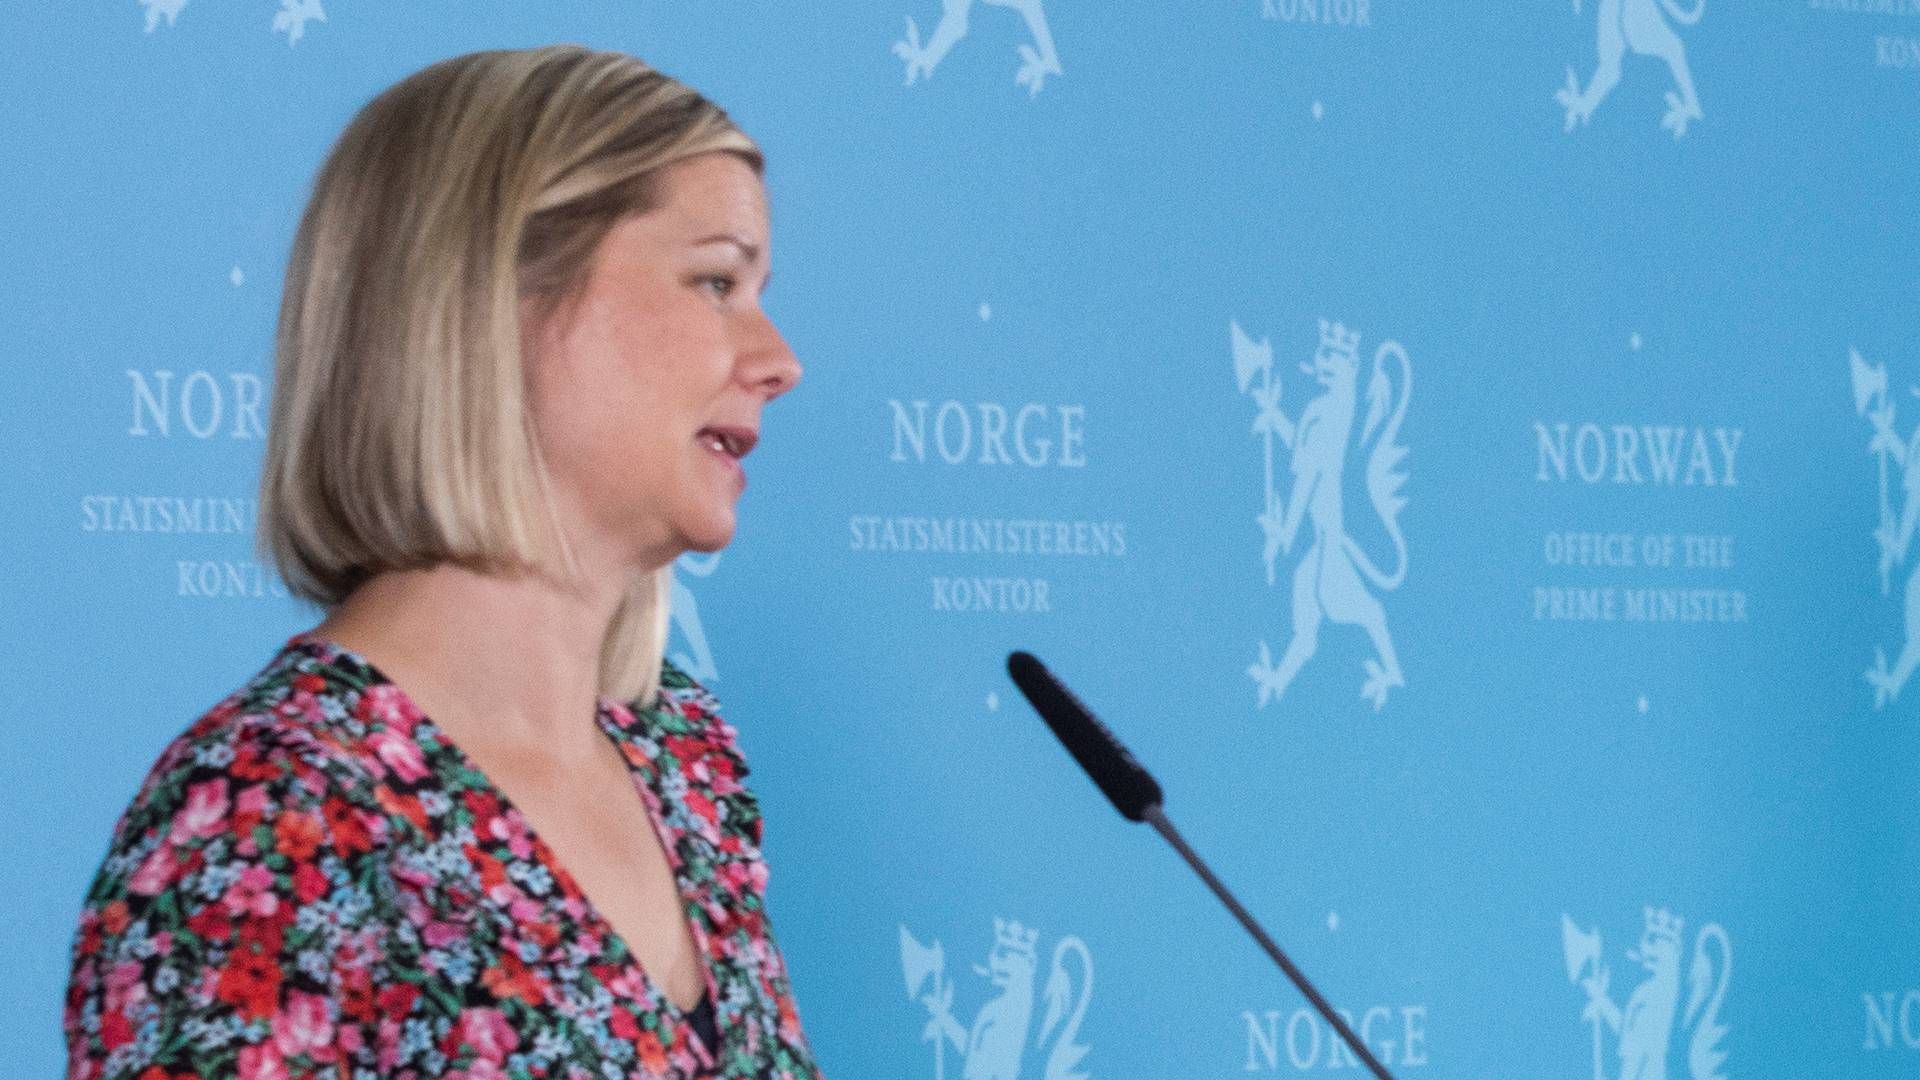 De store penge går til mandsdominerede brancher som olie og gas, og det skal der laves om på, mener Guri Melby, leder af Venstre i Norge.